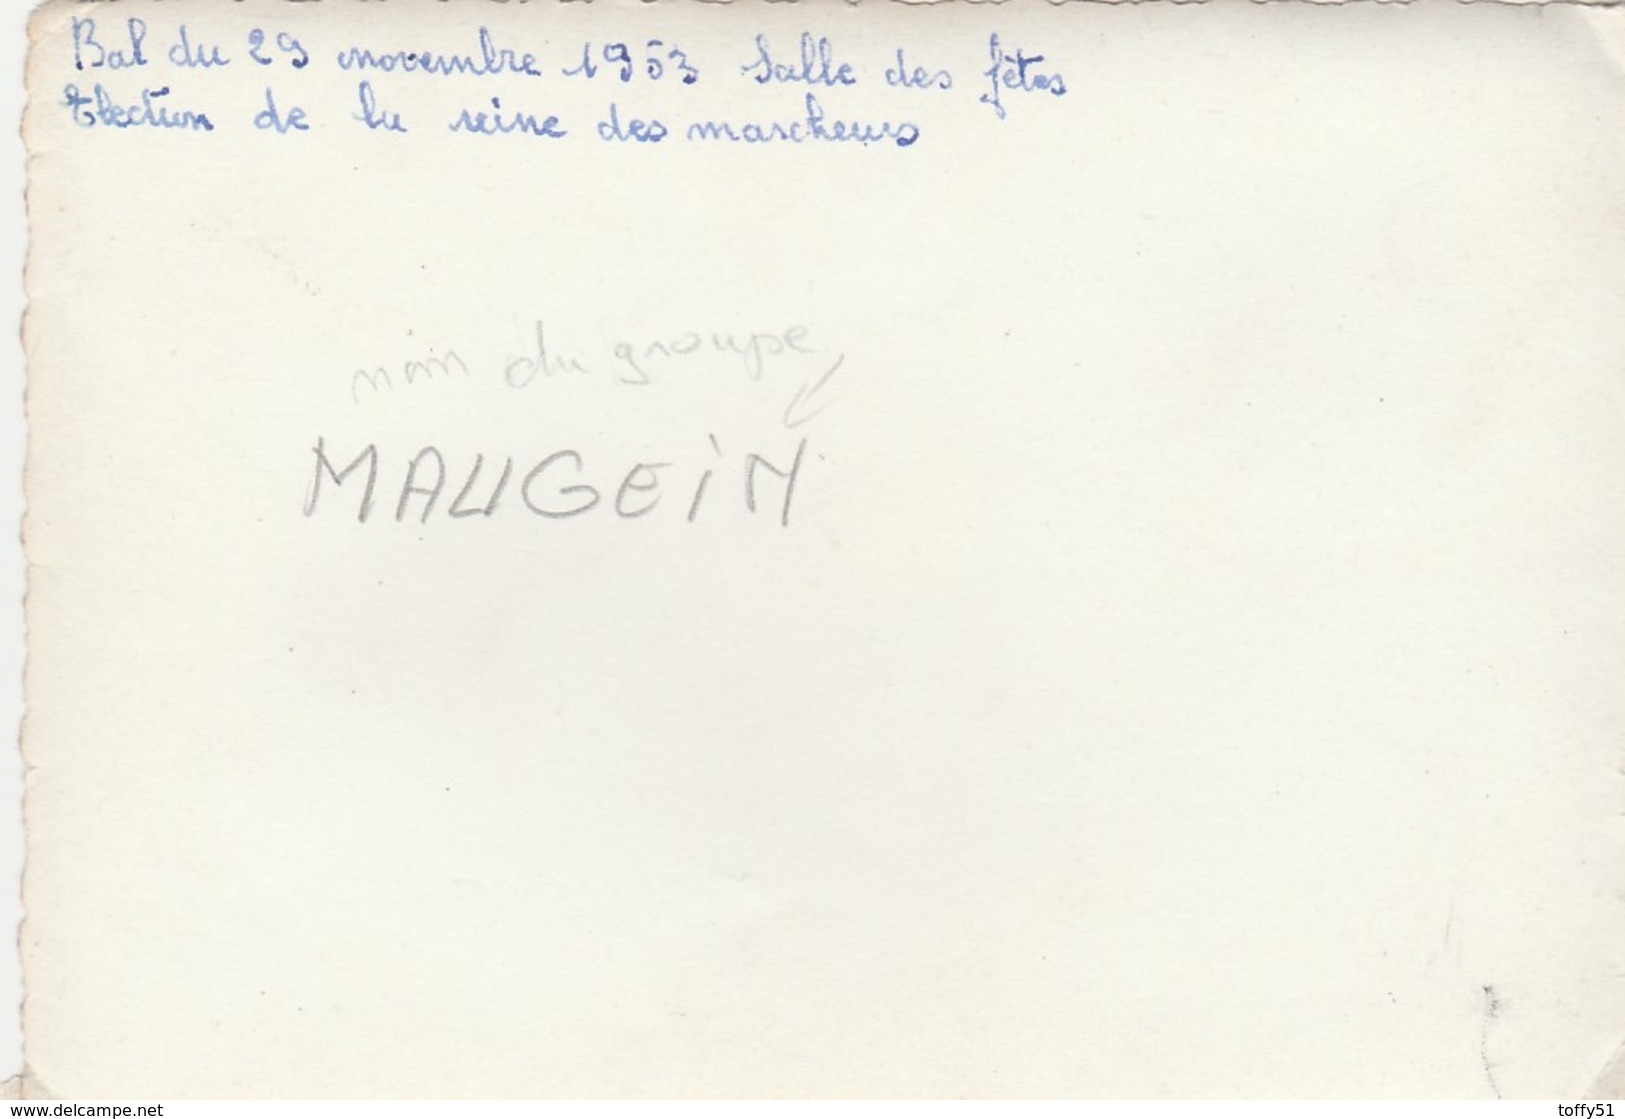 PHOTO (12.5x8.5 Cm) GROUPE ACCORDÉONISTE "MAUGEIN" BAL NOVEMBRE 1953 SALLE DES FÊTES REINE DES MARCHEURS - Chanteurs & Musiciens